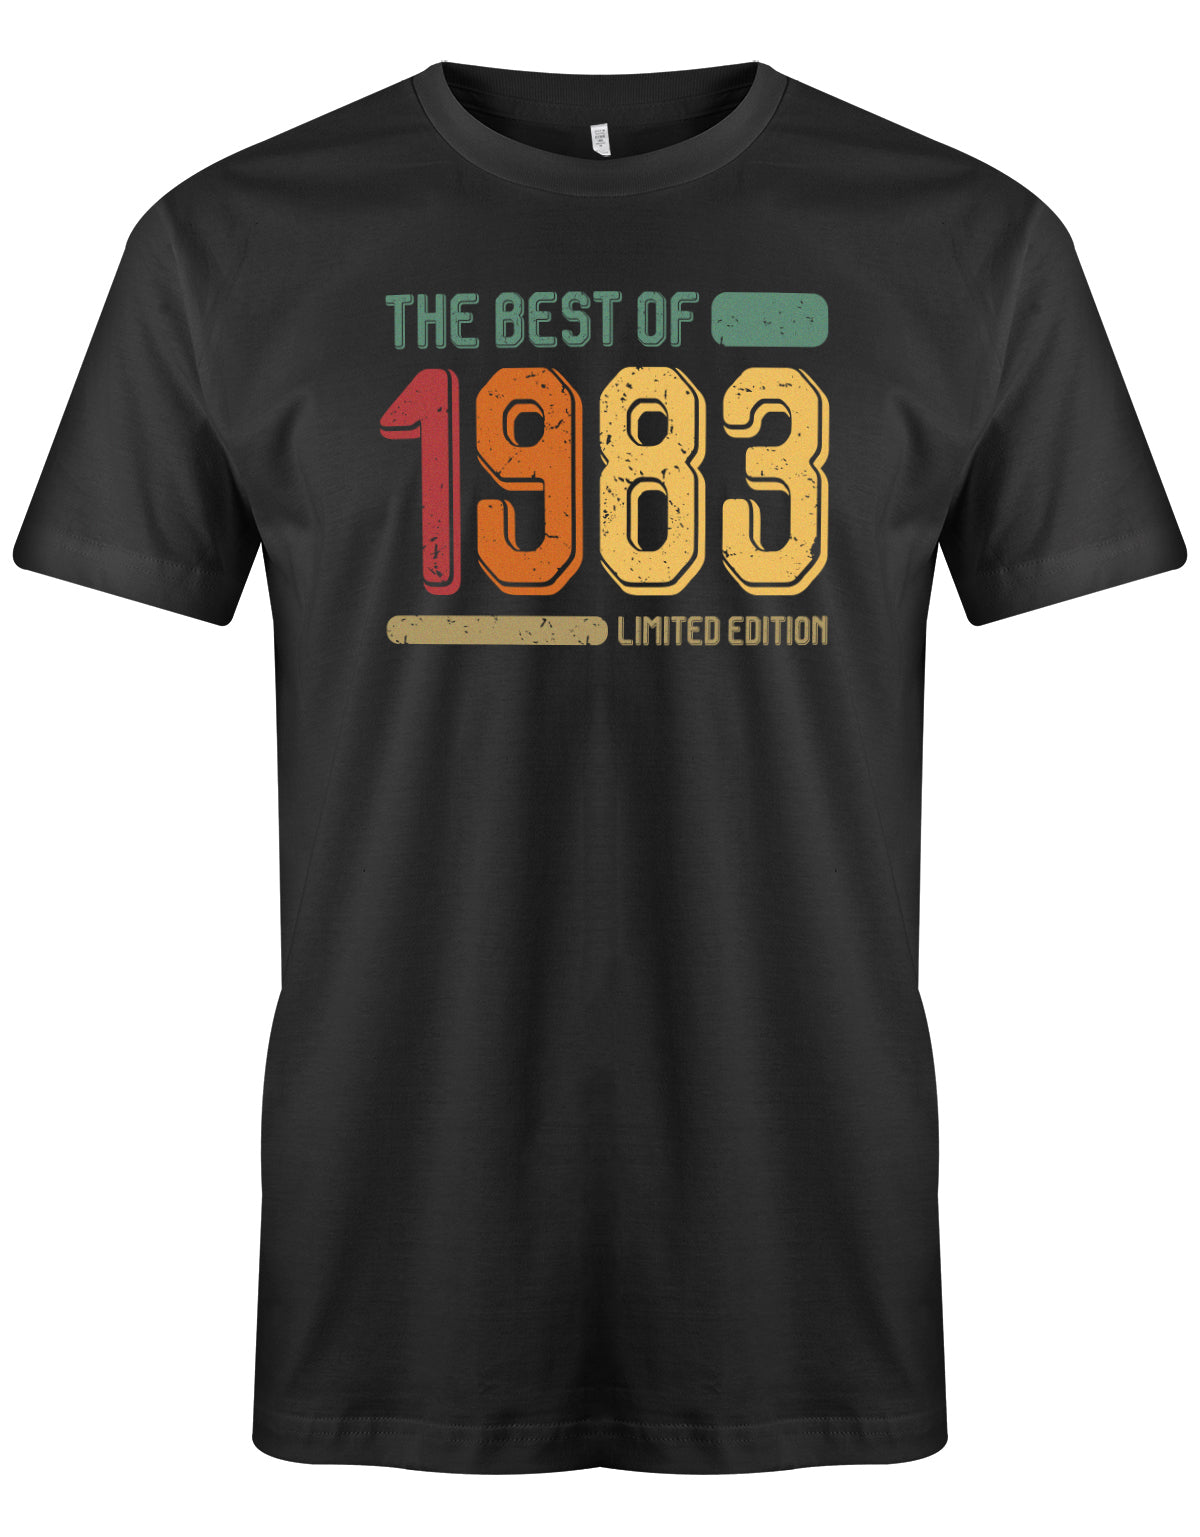 The best of 1983 Limited Edition Vintage TShirt - T-Shirt 40 Geburtstag Männer myShirtStore Schwarz